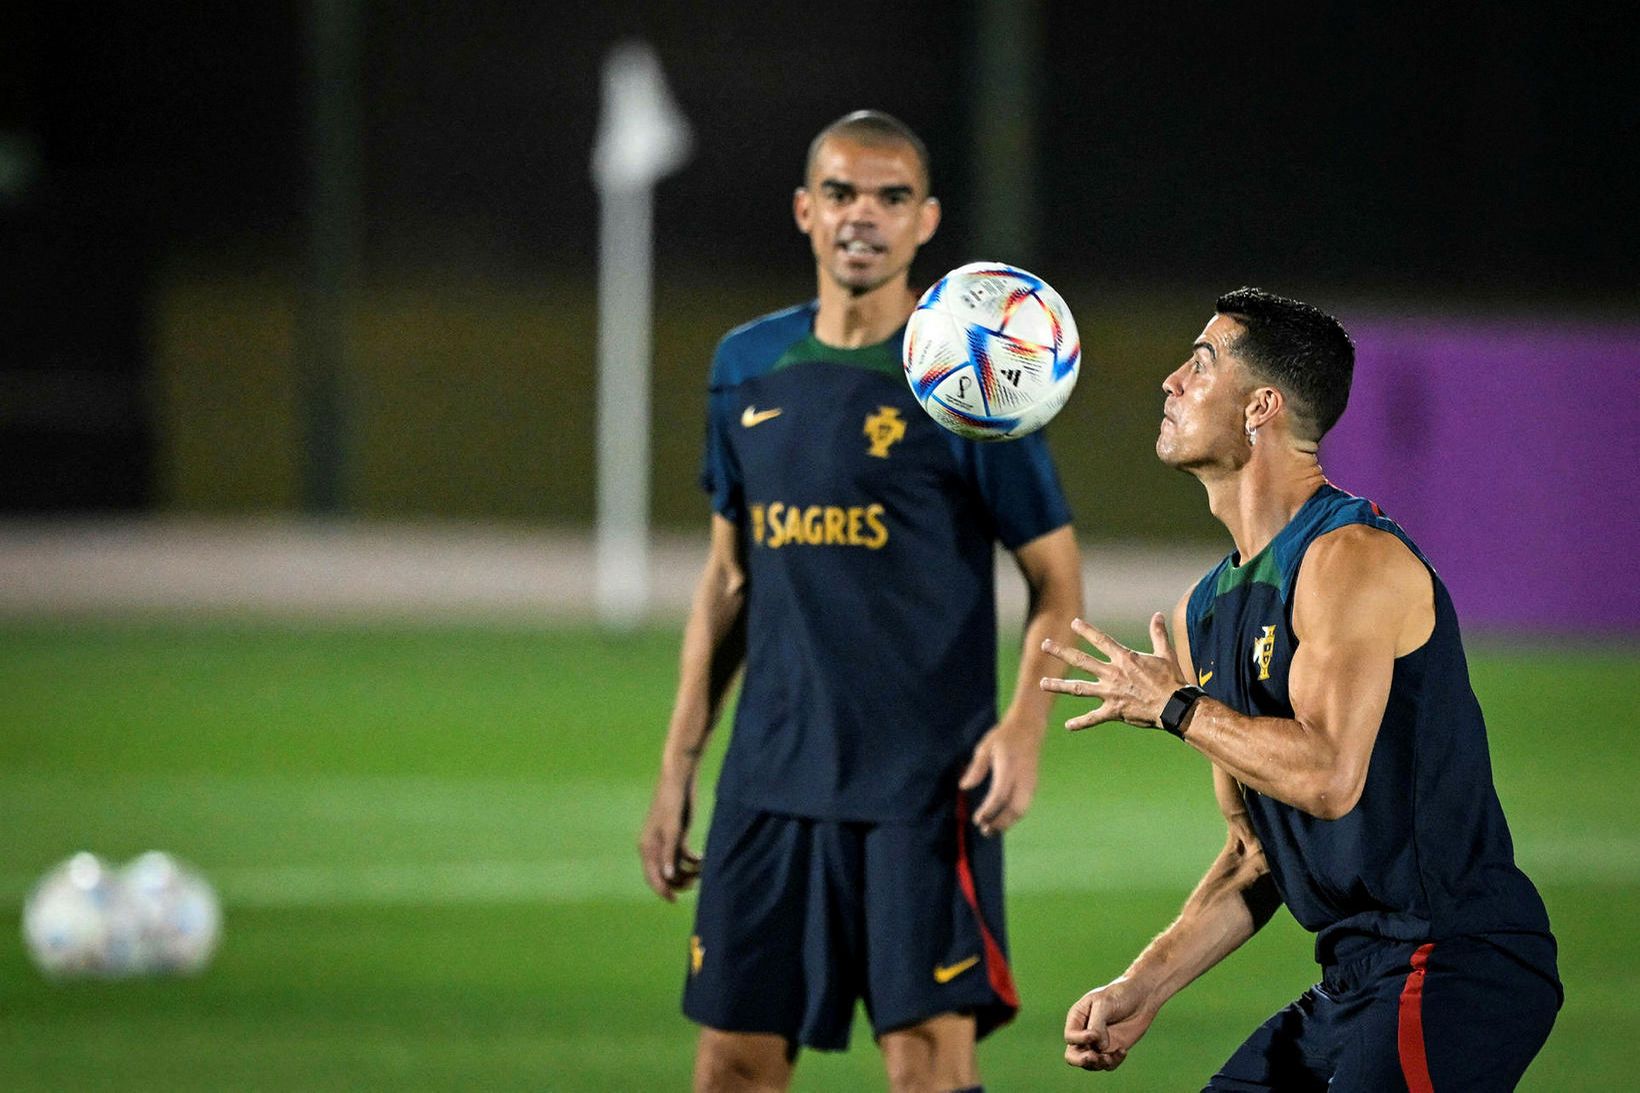 Pepe ásamt Cristiano Ronaldo á æfingu portúgalska liðsins í gær.